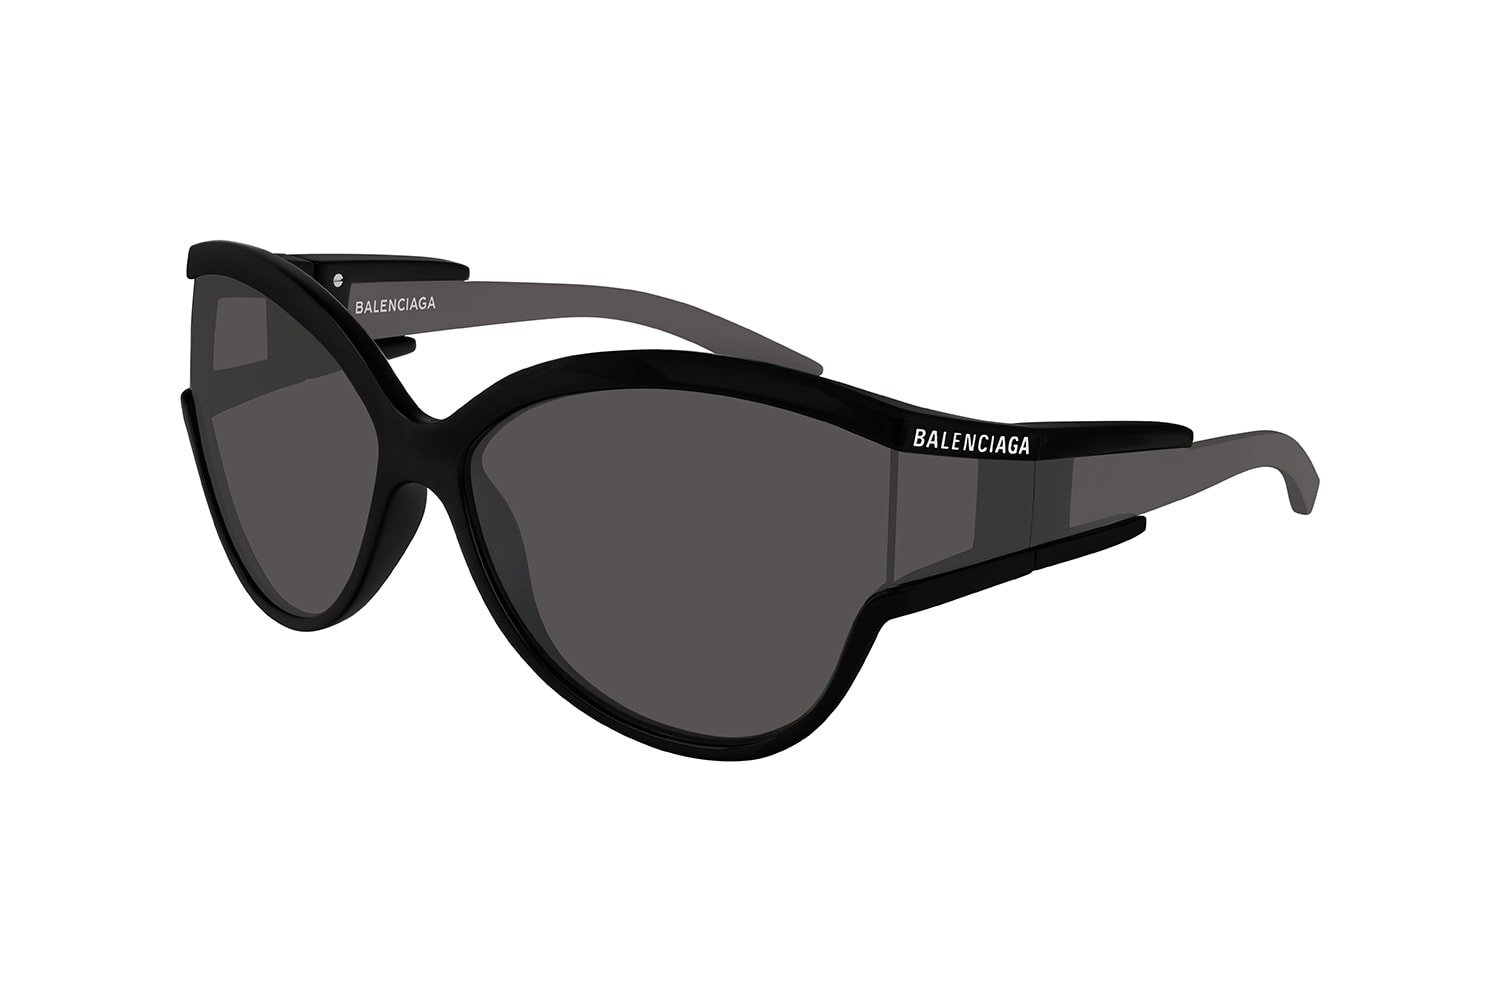 Balenciaga 攜手 Kering Eyewear 打造全新眼鏡系列